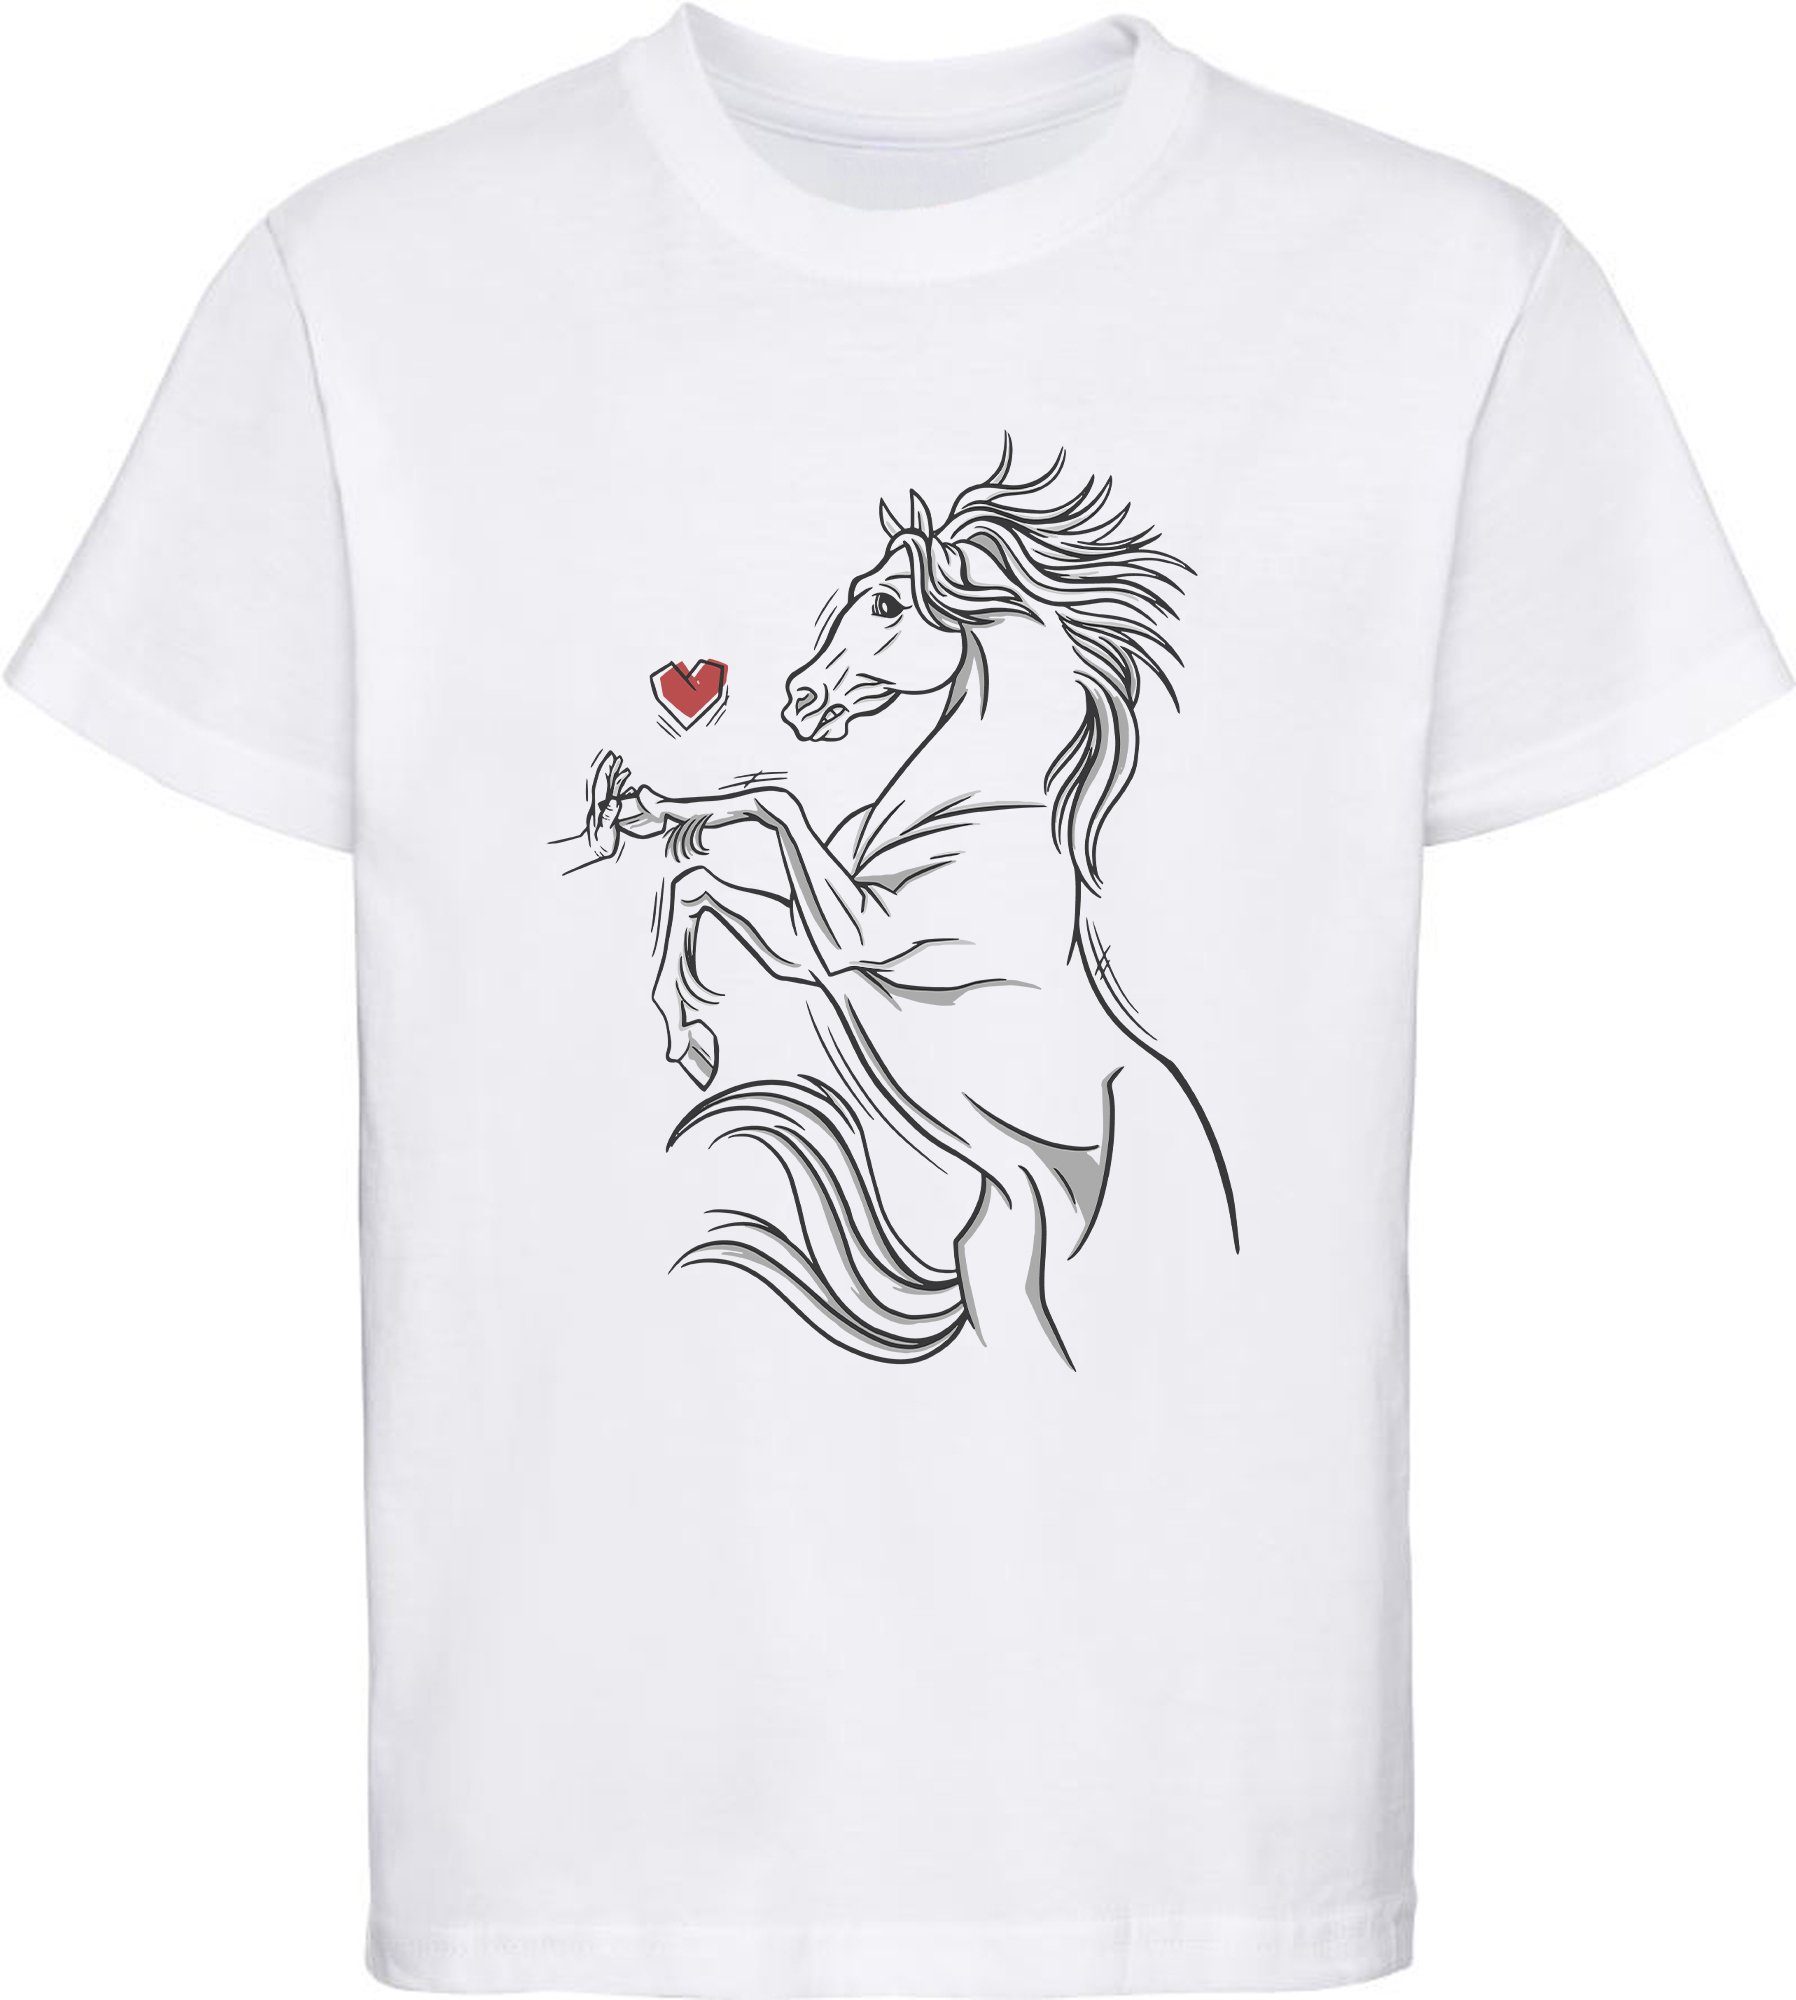 MyDesign24 Print-Shirt bedrucktes Mädchen T-Shirt Pferd das eine Hand berührt Baumwollshirt mit Aufdruck, i159 weiss